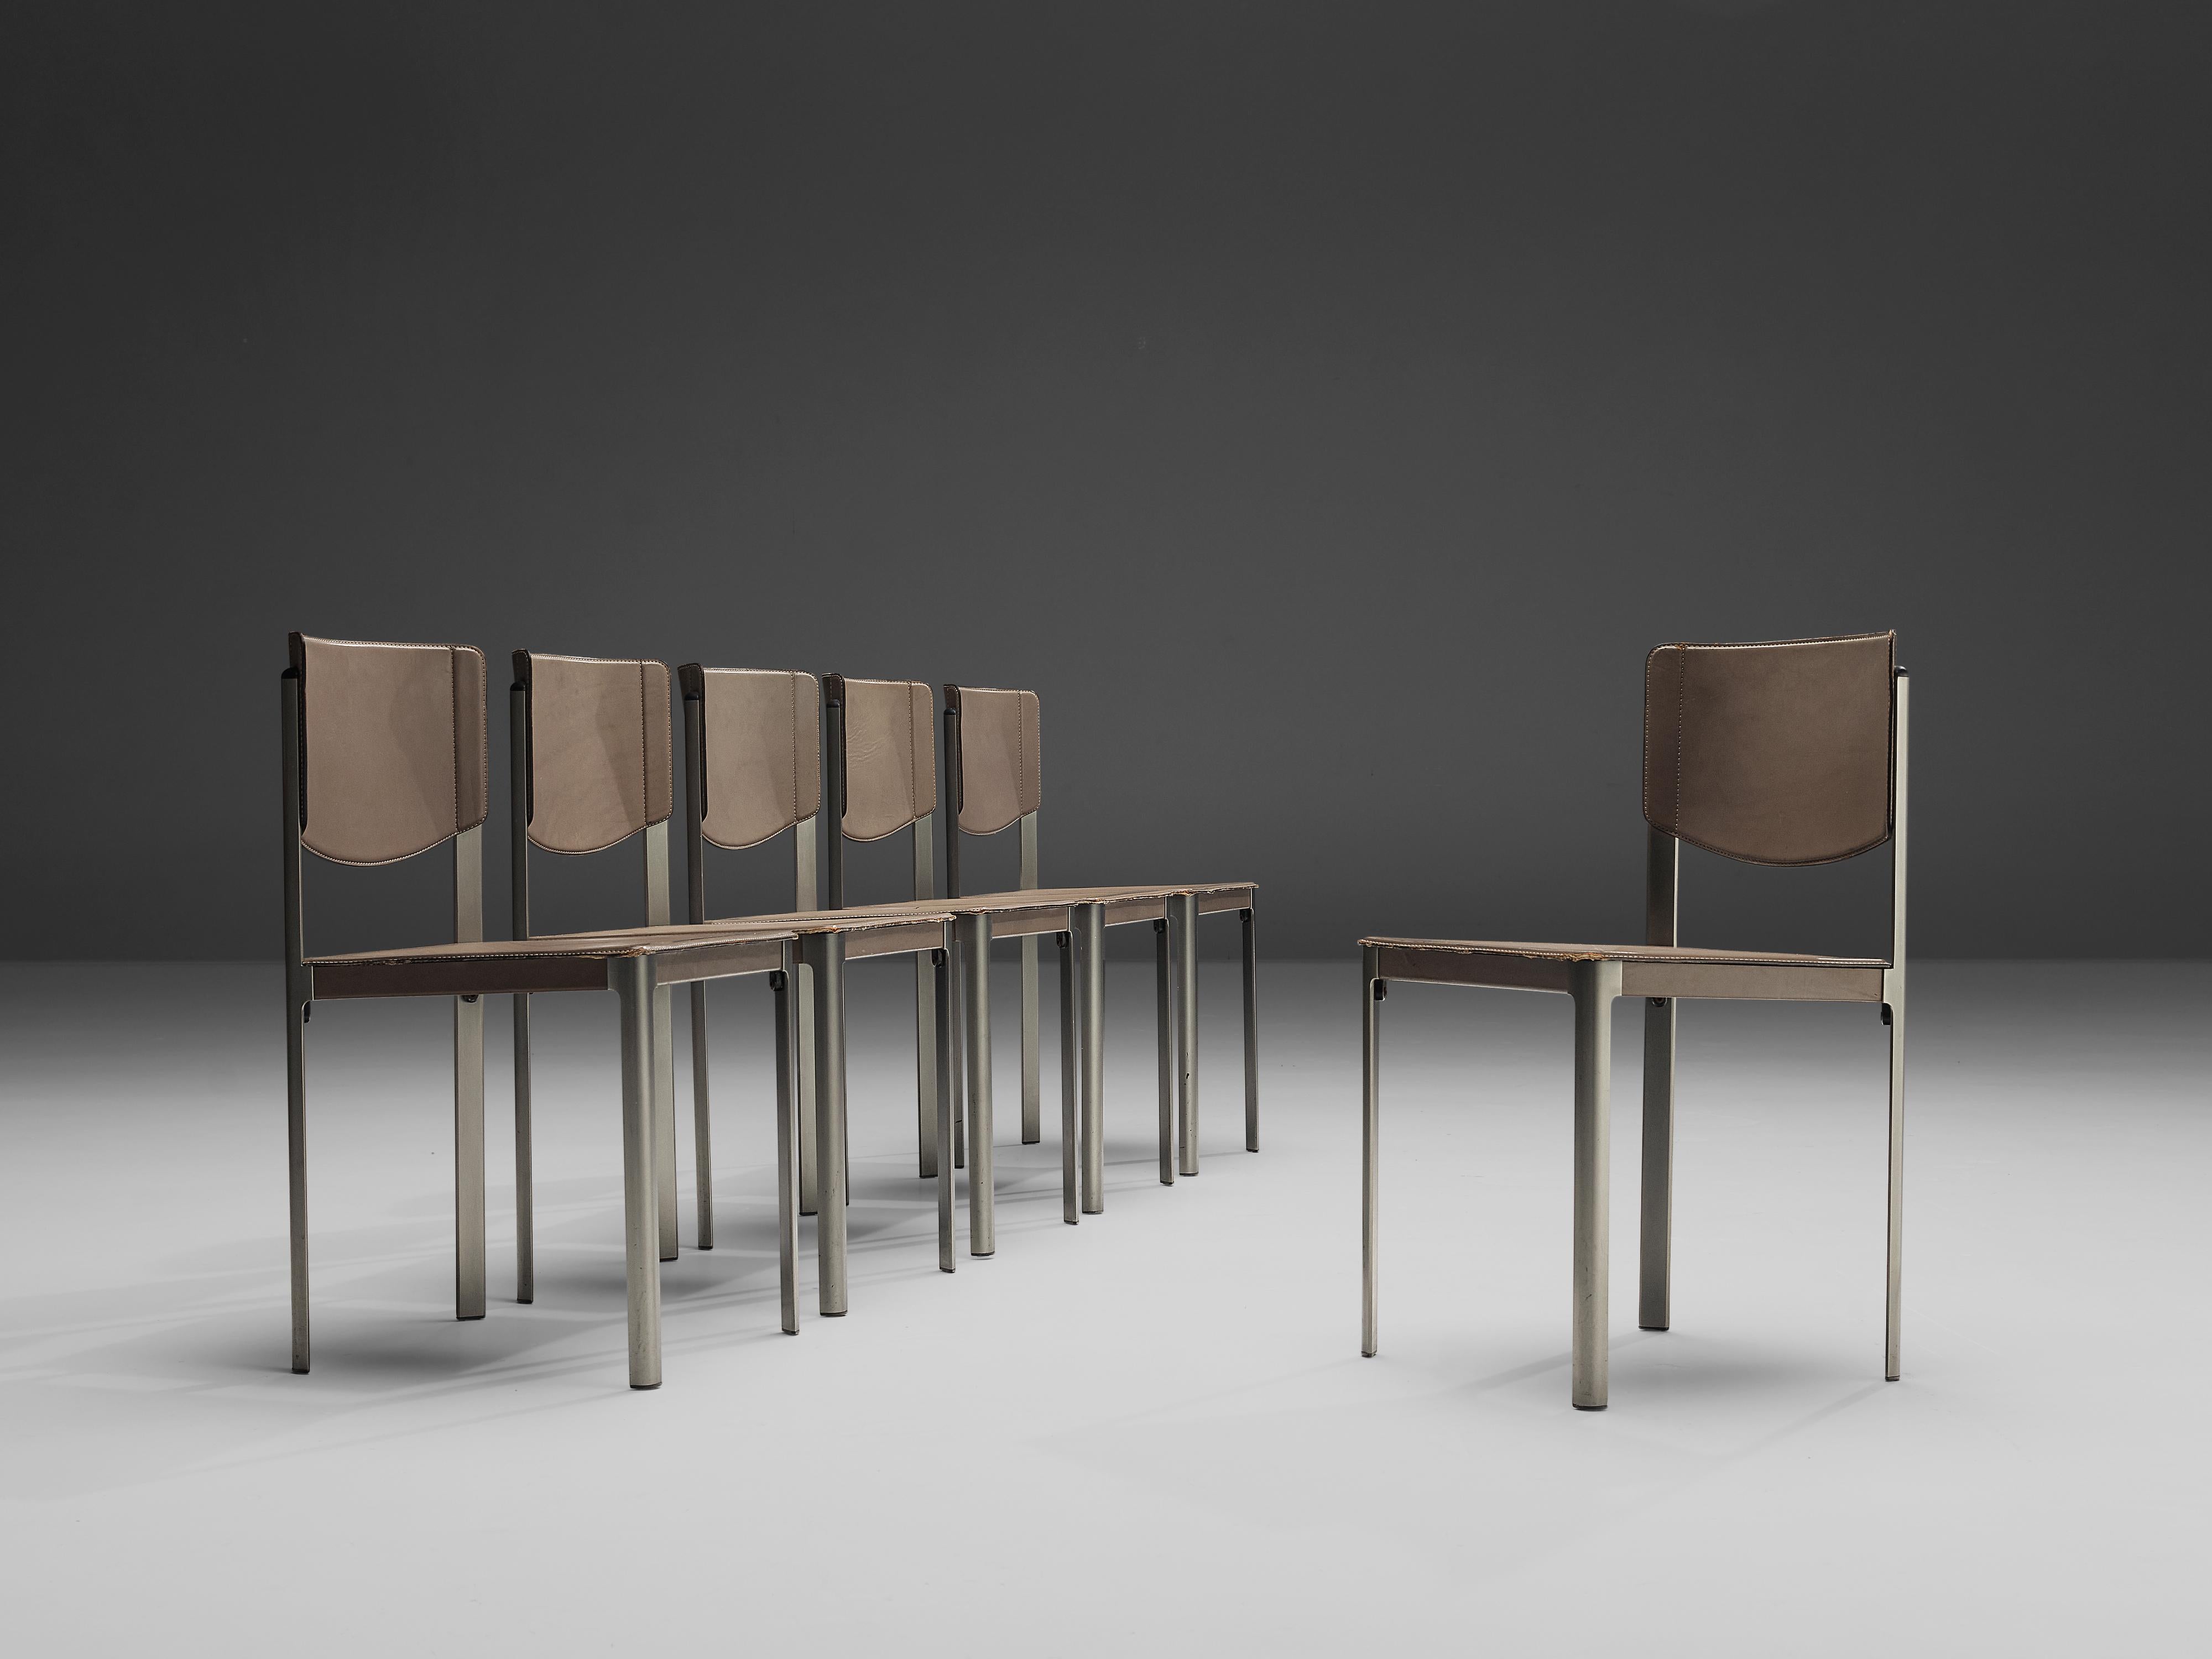 Matteo Grassi, ensemble de six chaises de salle à manger, cuir et acier, Italie, années 1980.

Ces chaises sophistiquées en cuir gris de Matteo Grassi, présentent un design angulaire. L'assise et le piètement sont recouverts de cuir, laissant le